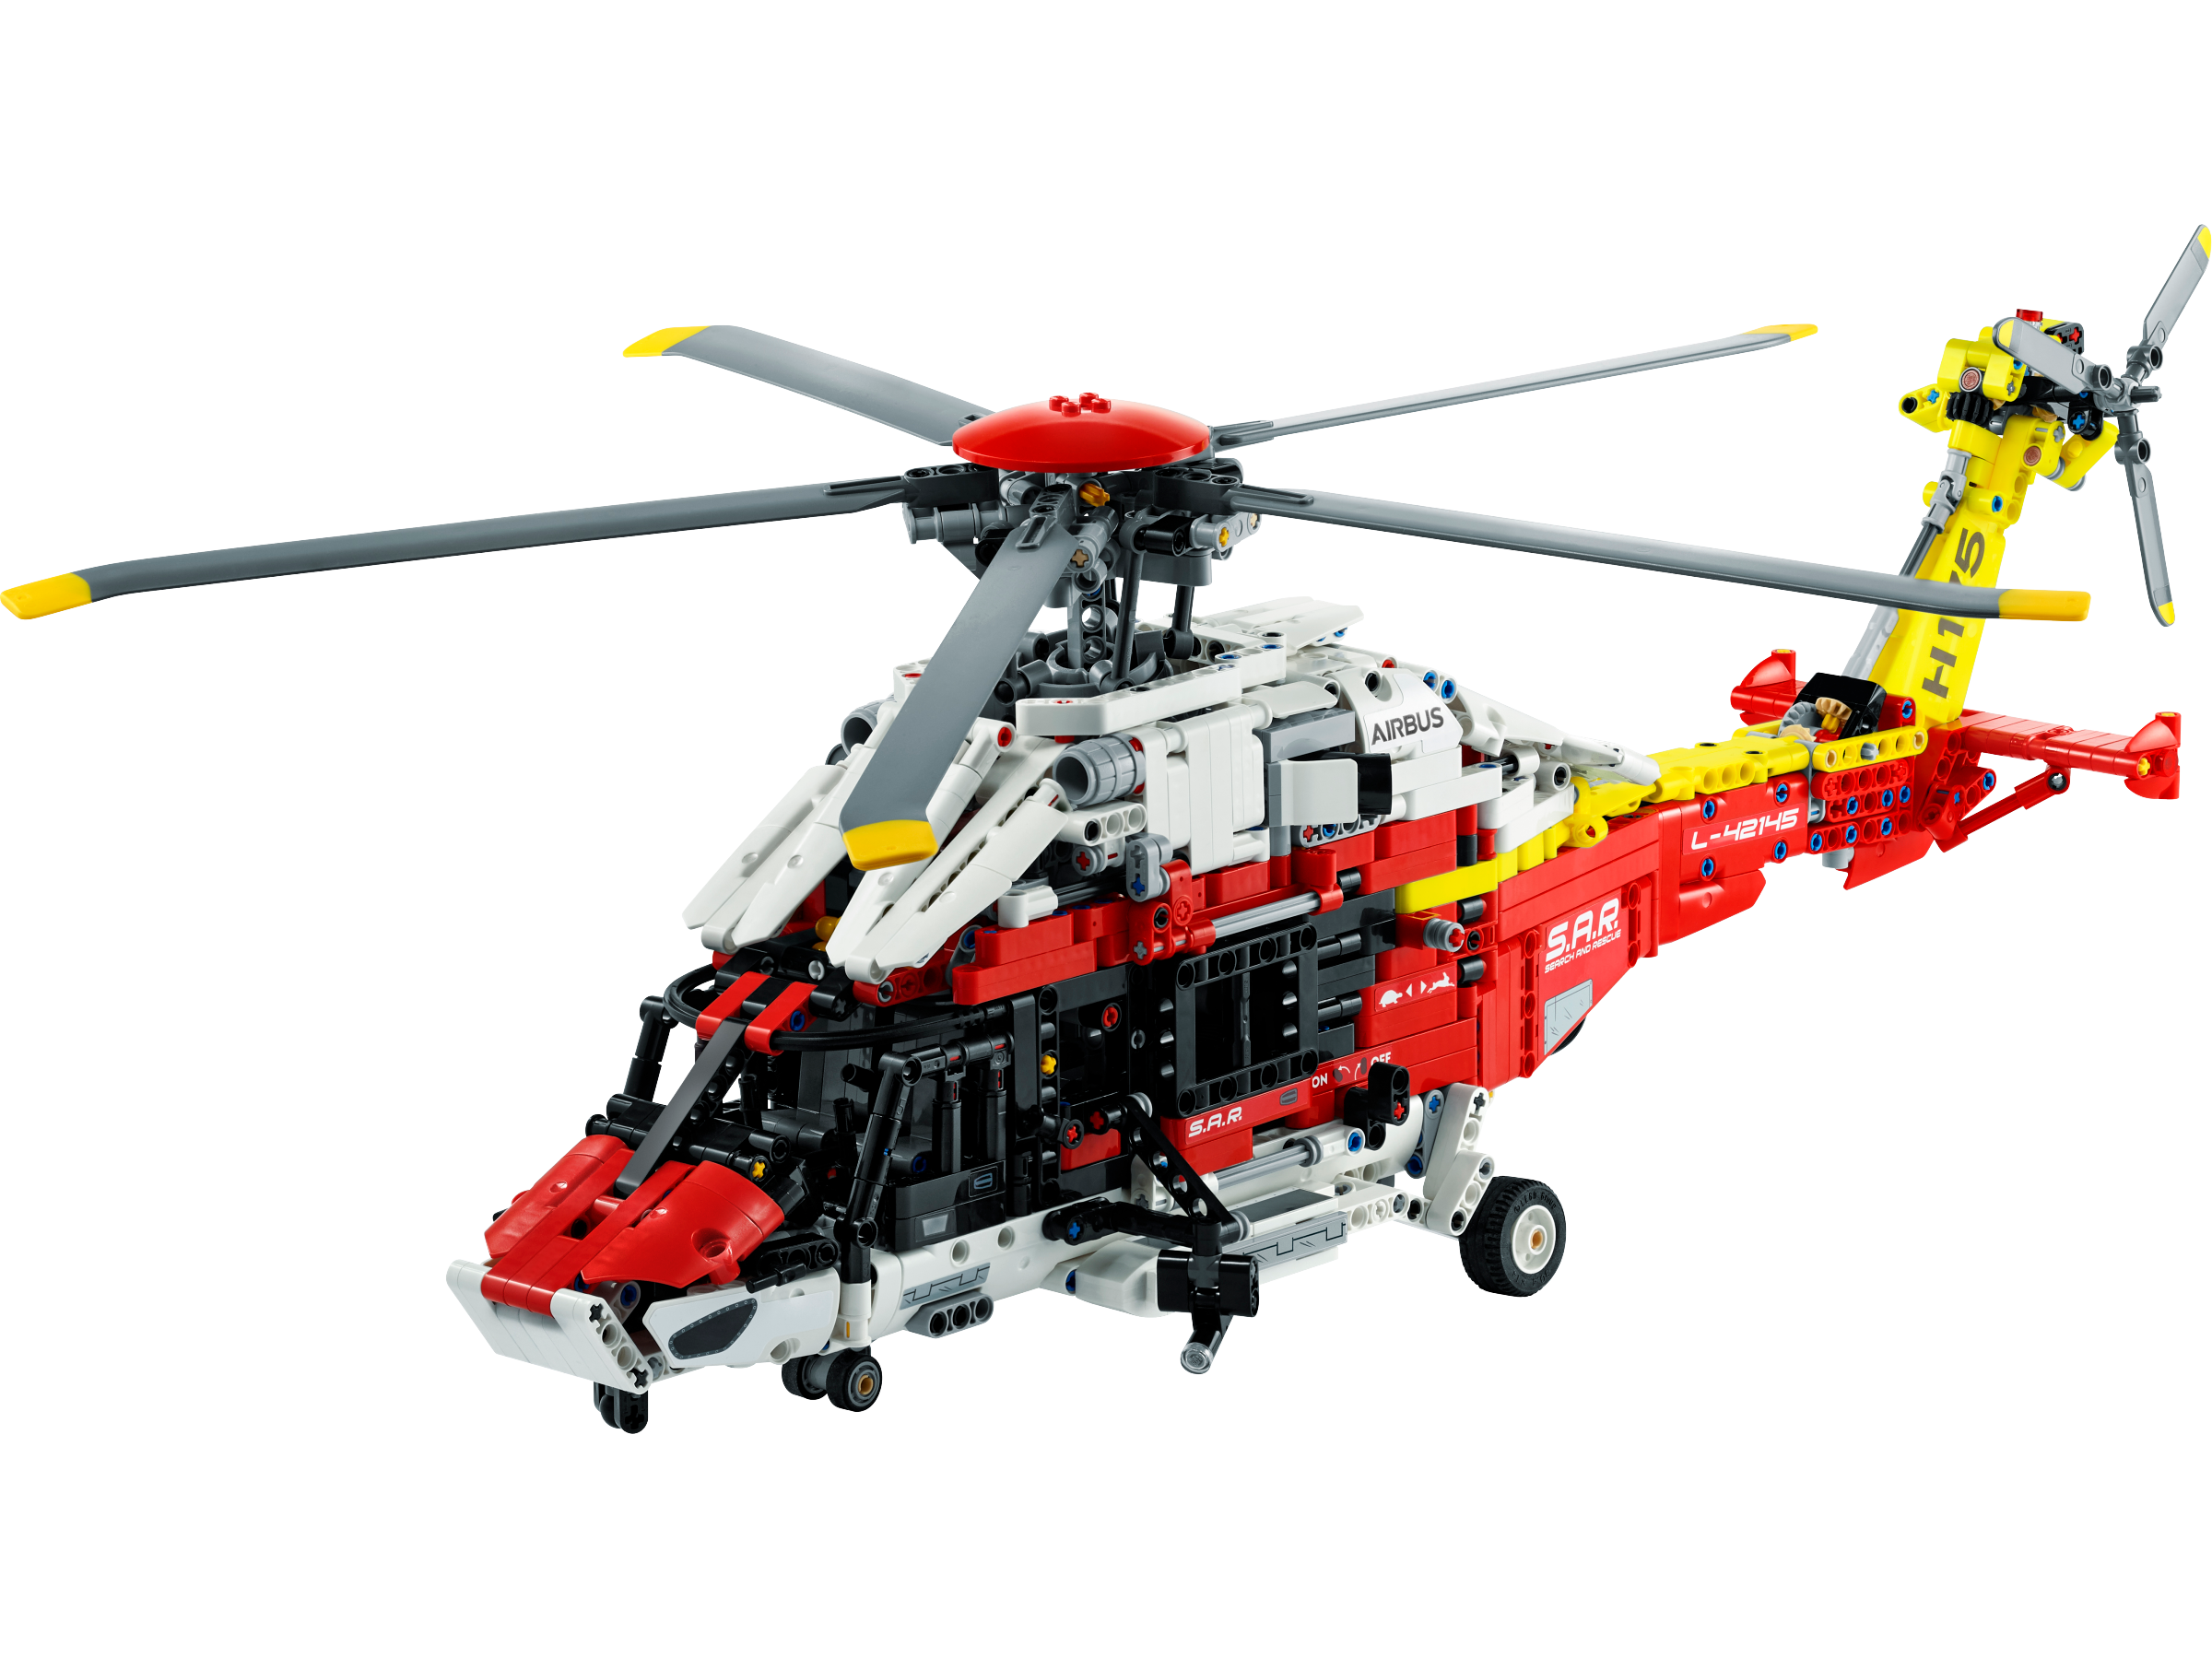 エアバス H175 レスキューヘリコプター 42145 | テクニック |レゴ